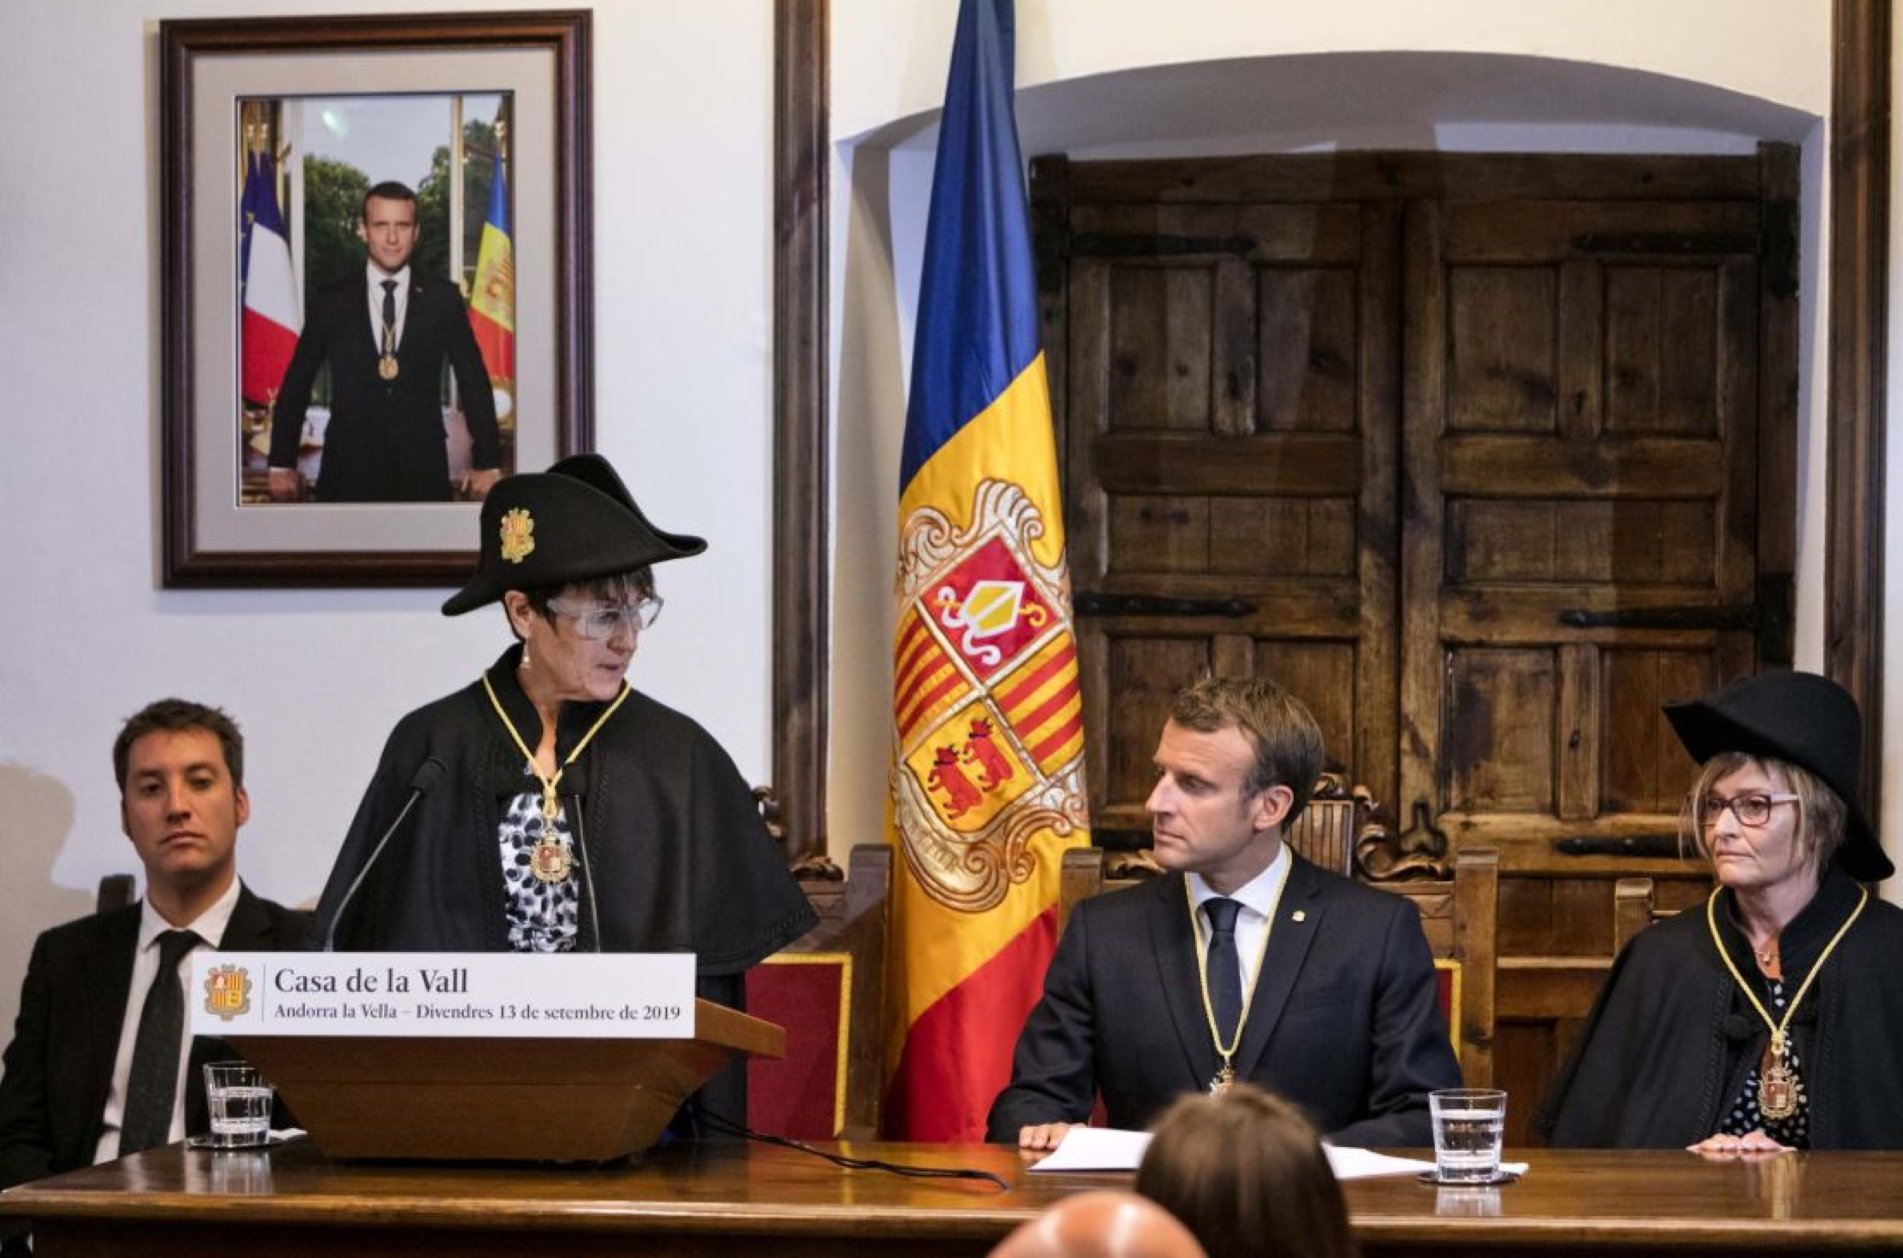 Macron Casa de la Vall Andorra @governandorra